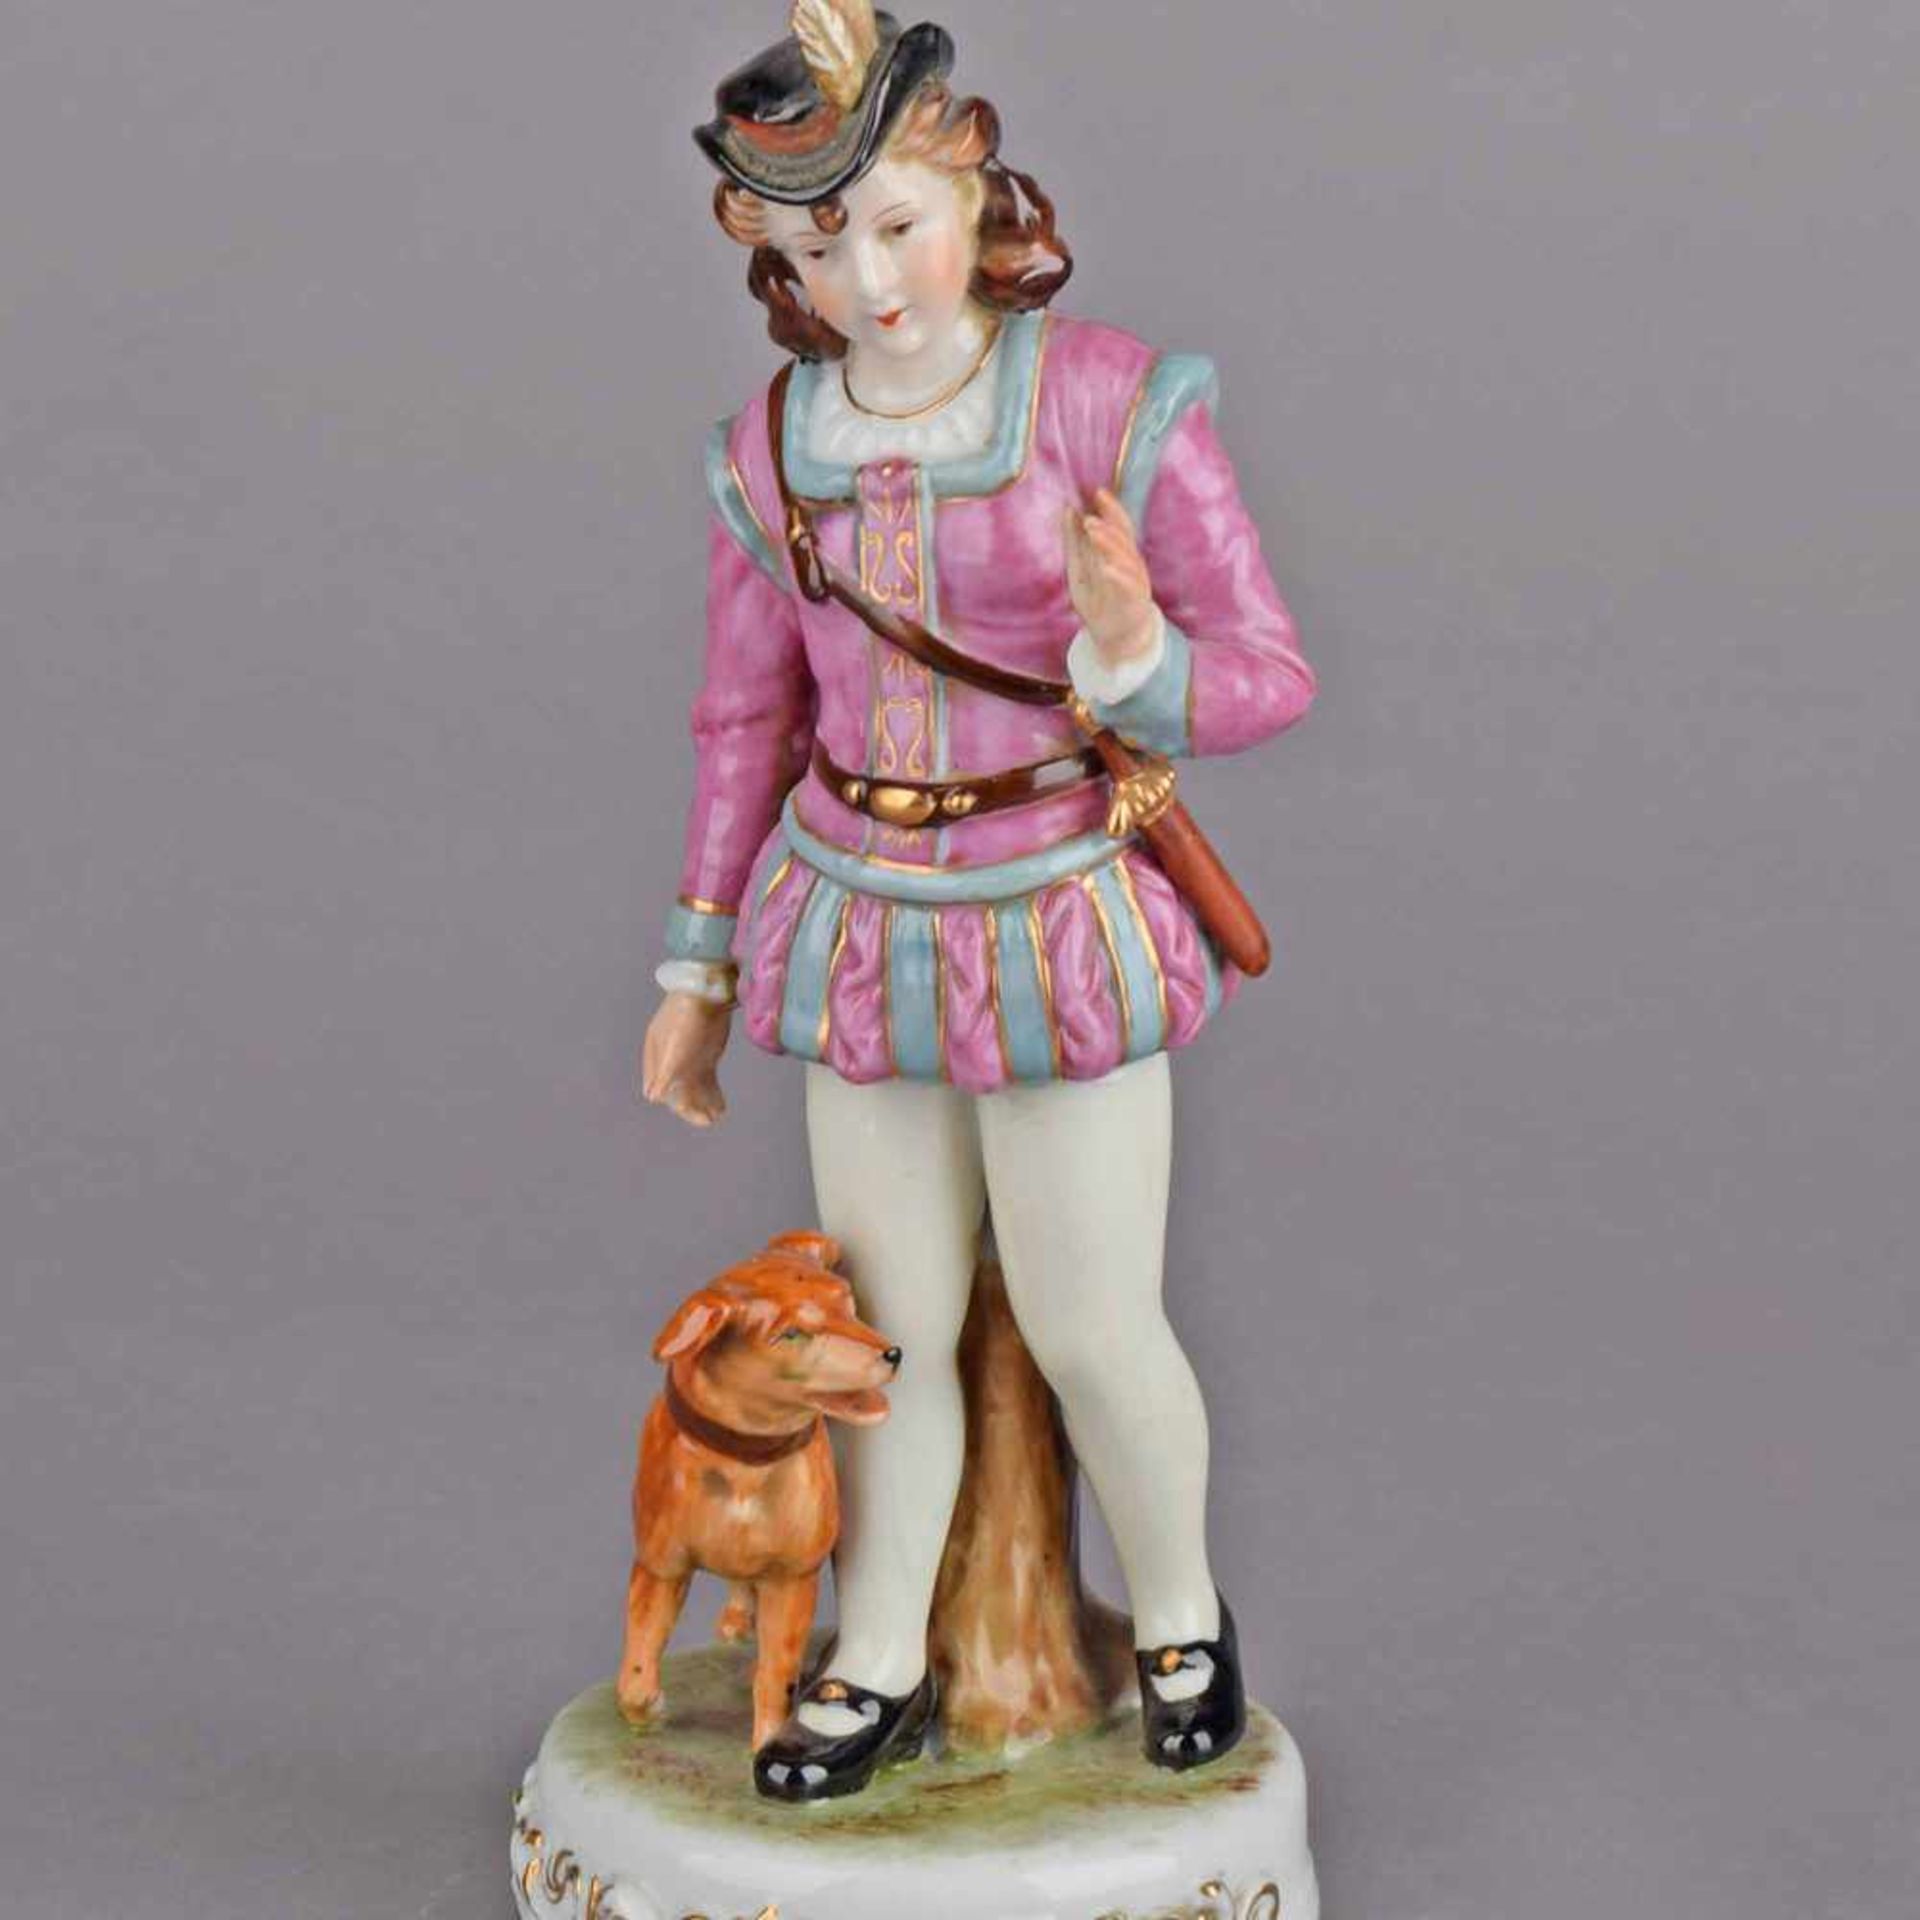 Jäger-Figurine Bodenmarke in Rot "Marurjama Made in Occupied Japan", Dame im stilisierten